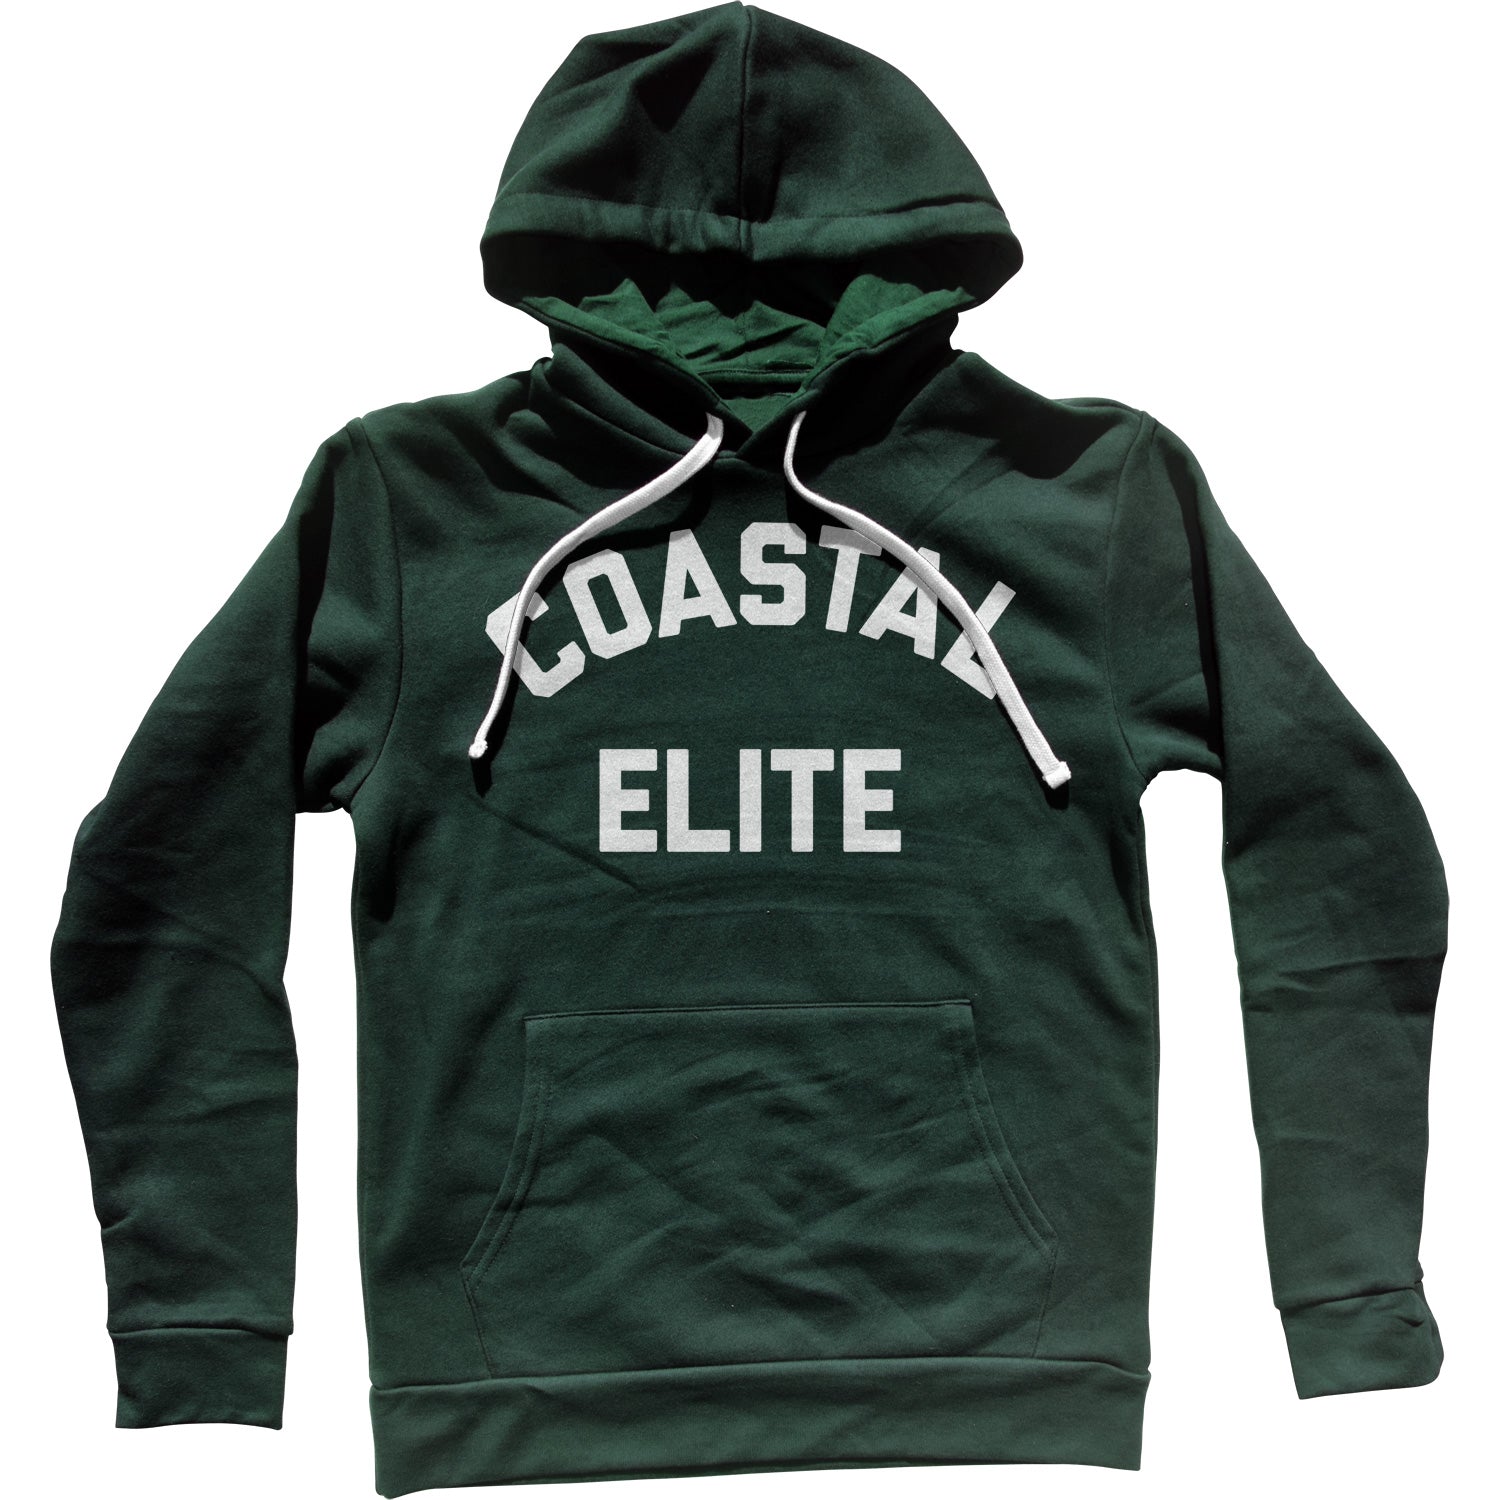 Coastal Elite Unisex Hoodie